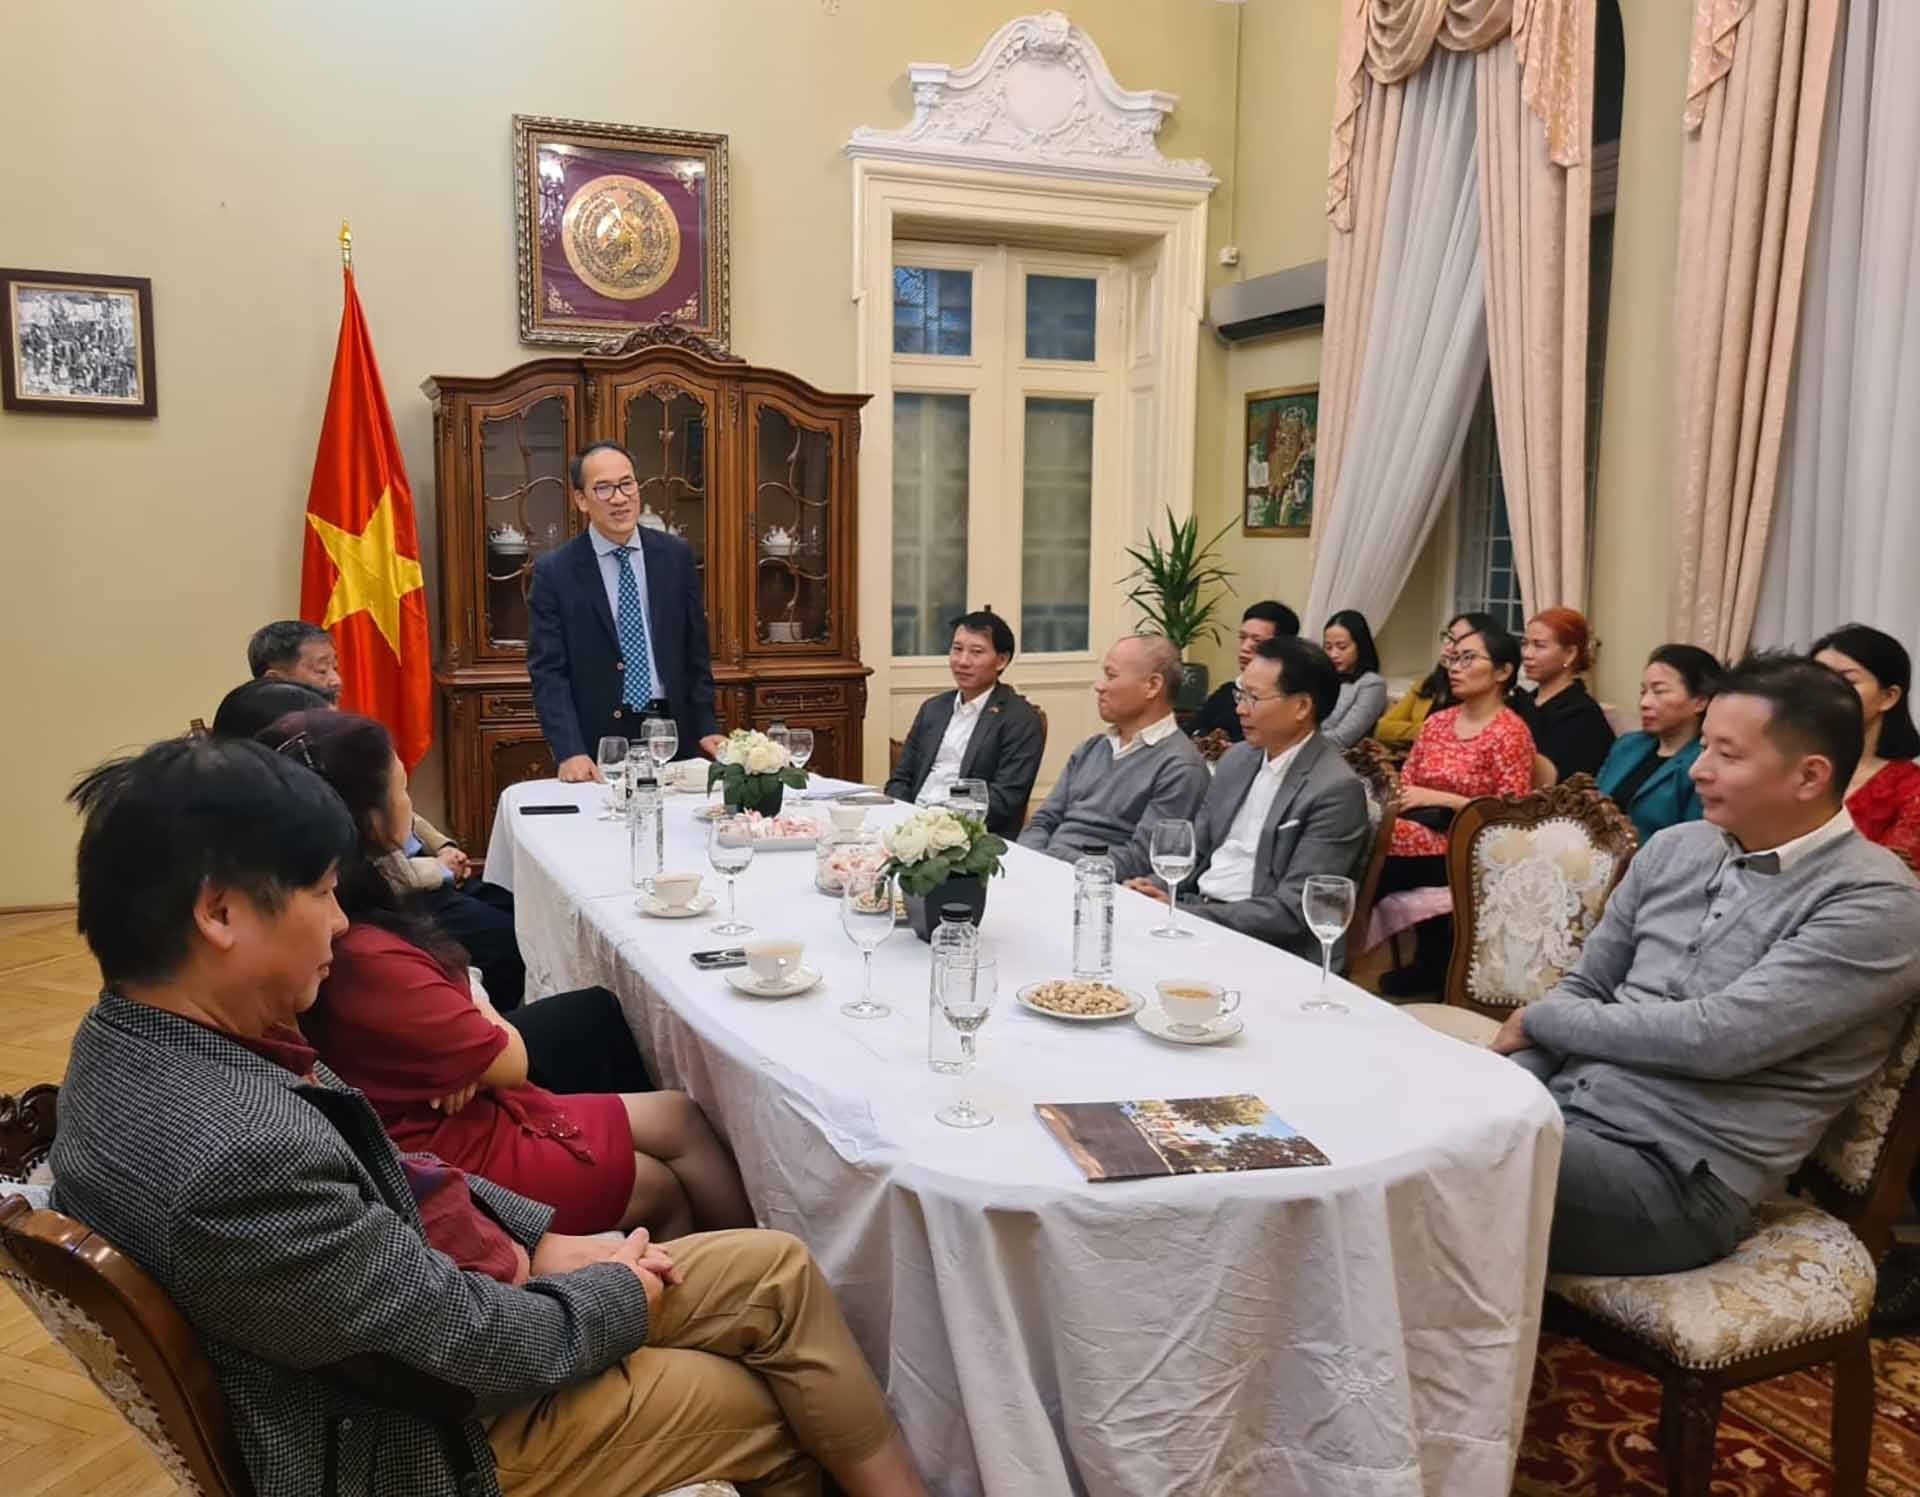 Đại sứ Đỗ Đức Thành biểu dương, đánh giá cao kết quả hoạt động của Cộng đồng, các hội đoàn người Việt tại Romania.